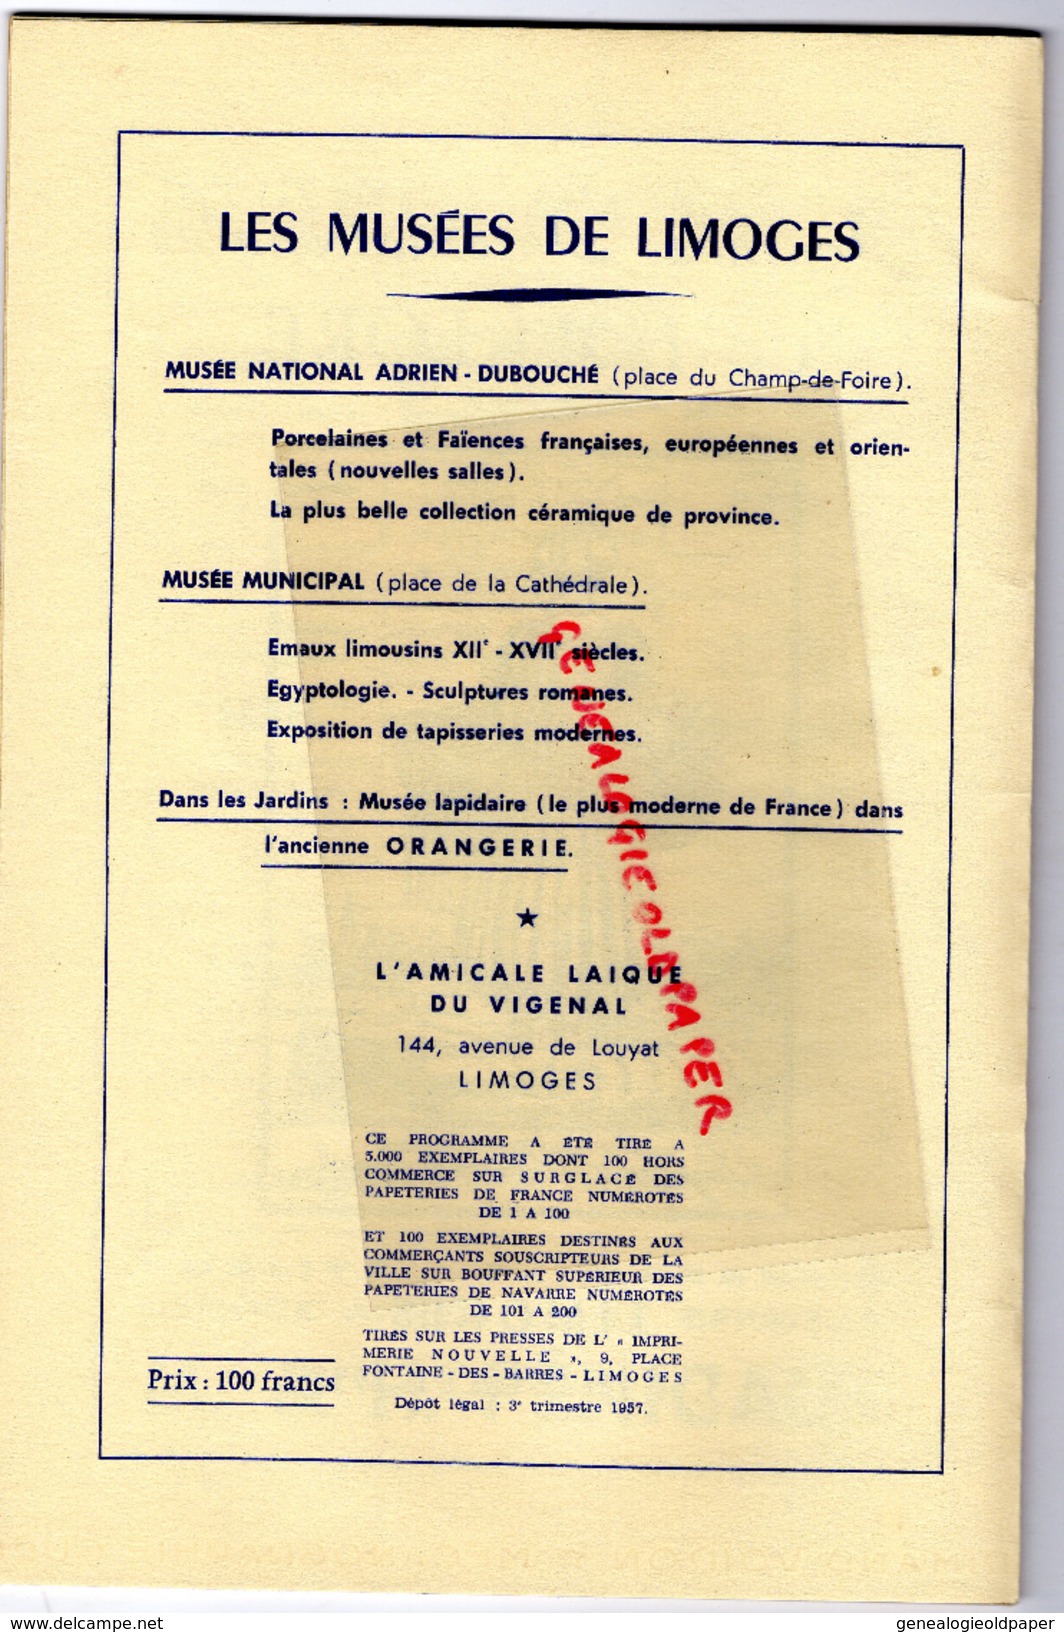 87 - LIMOGES - FOLKLORE 1957-LONGEQUEUE- AURILLAC-COLMAR-ST PE DE LEREN-NIMES-CHAROLLES-MALINES-QUIMPERLE-BAYONNE - Documents Historiques